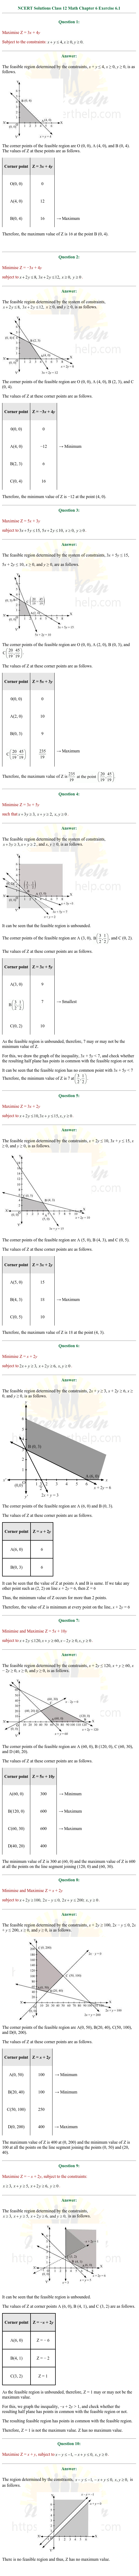 ex.12.1 Class 12 Math Chapter 12 ncert solutions